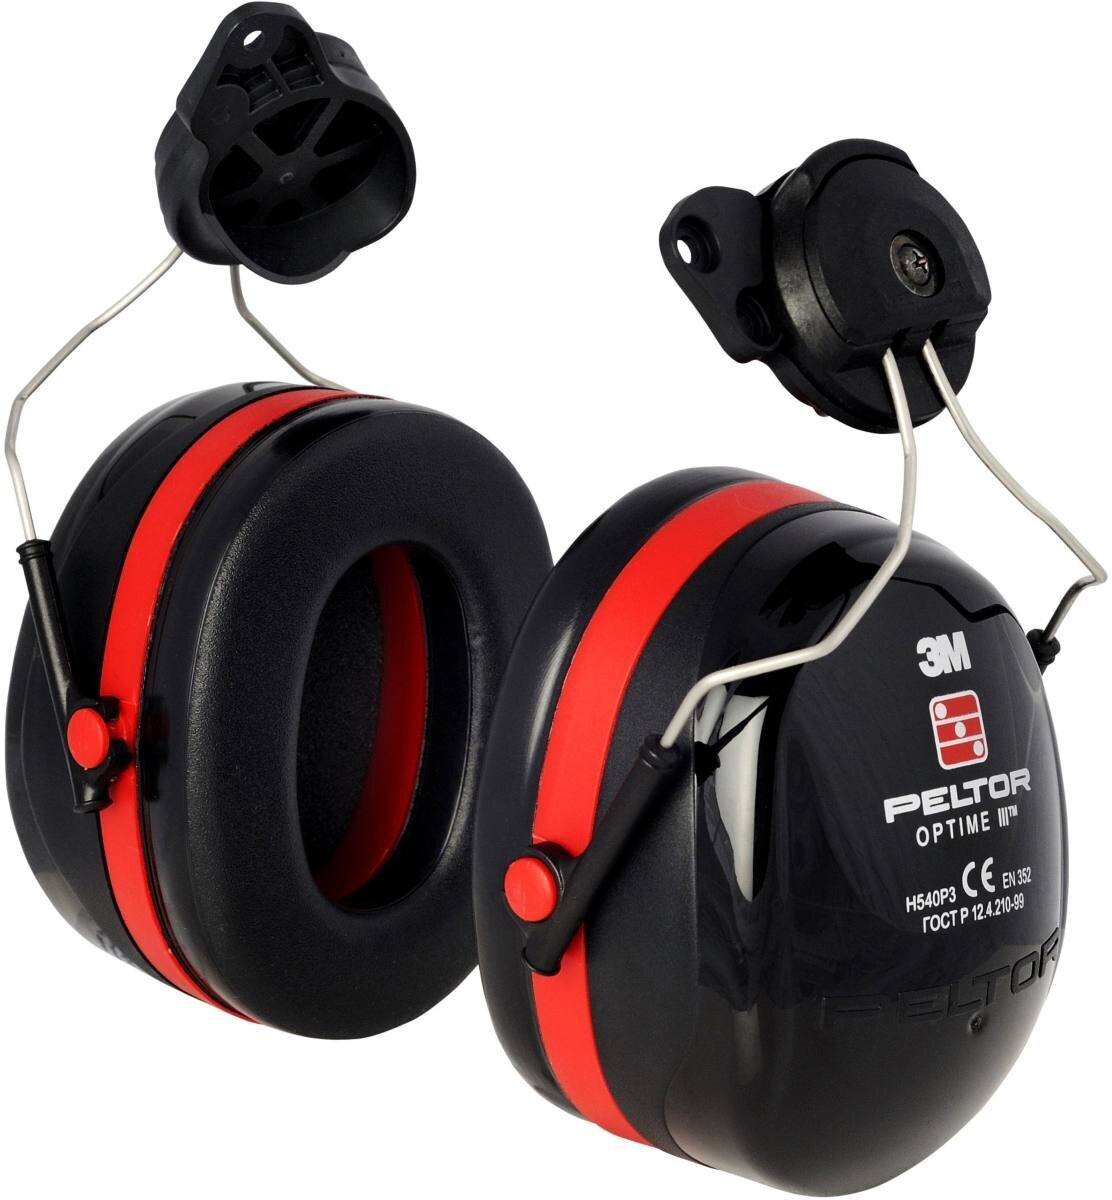 3M Peltor Optime III Casque antibruit, fixation pour casque, noir, avec adaptateur pour casque, SNR = 34 dB, H540P3H-413-SV